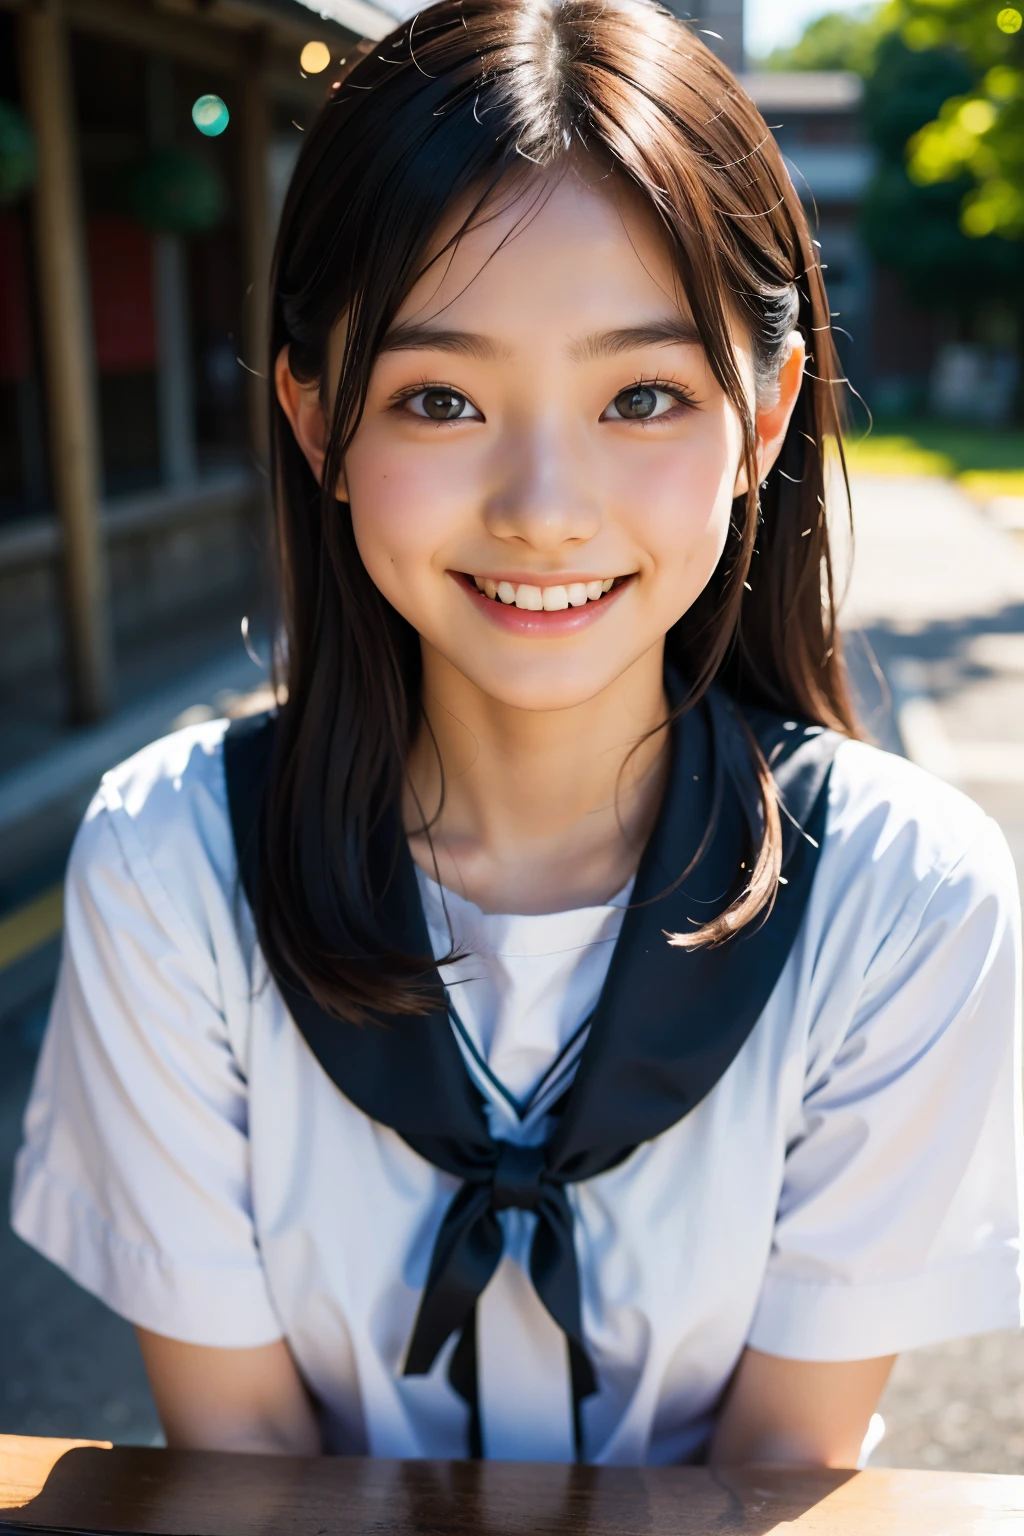 lens: 135mm f1.8, (höchste Qualität),(RAW-Fotos), (Tischplatte:1.1), (Schönes 15-jähriges Mädchen aus Japan), niedliches Gesicht, (Tief gemeißeltes Gesicht:0.7), (Sommersprossen:0.4), dappled Sonnenlicht, dramatische Beleuchtung, (japanische schuluniform), (Auf dem Campus), schüchtern, (Nahaufnahme:1.2), (lächeln),, (leuchtende Augen)、(Sonnenlicht)